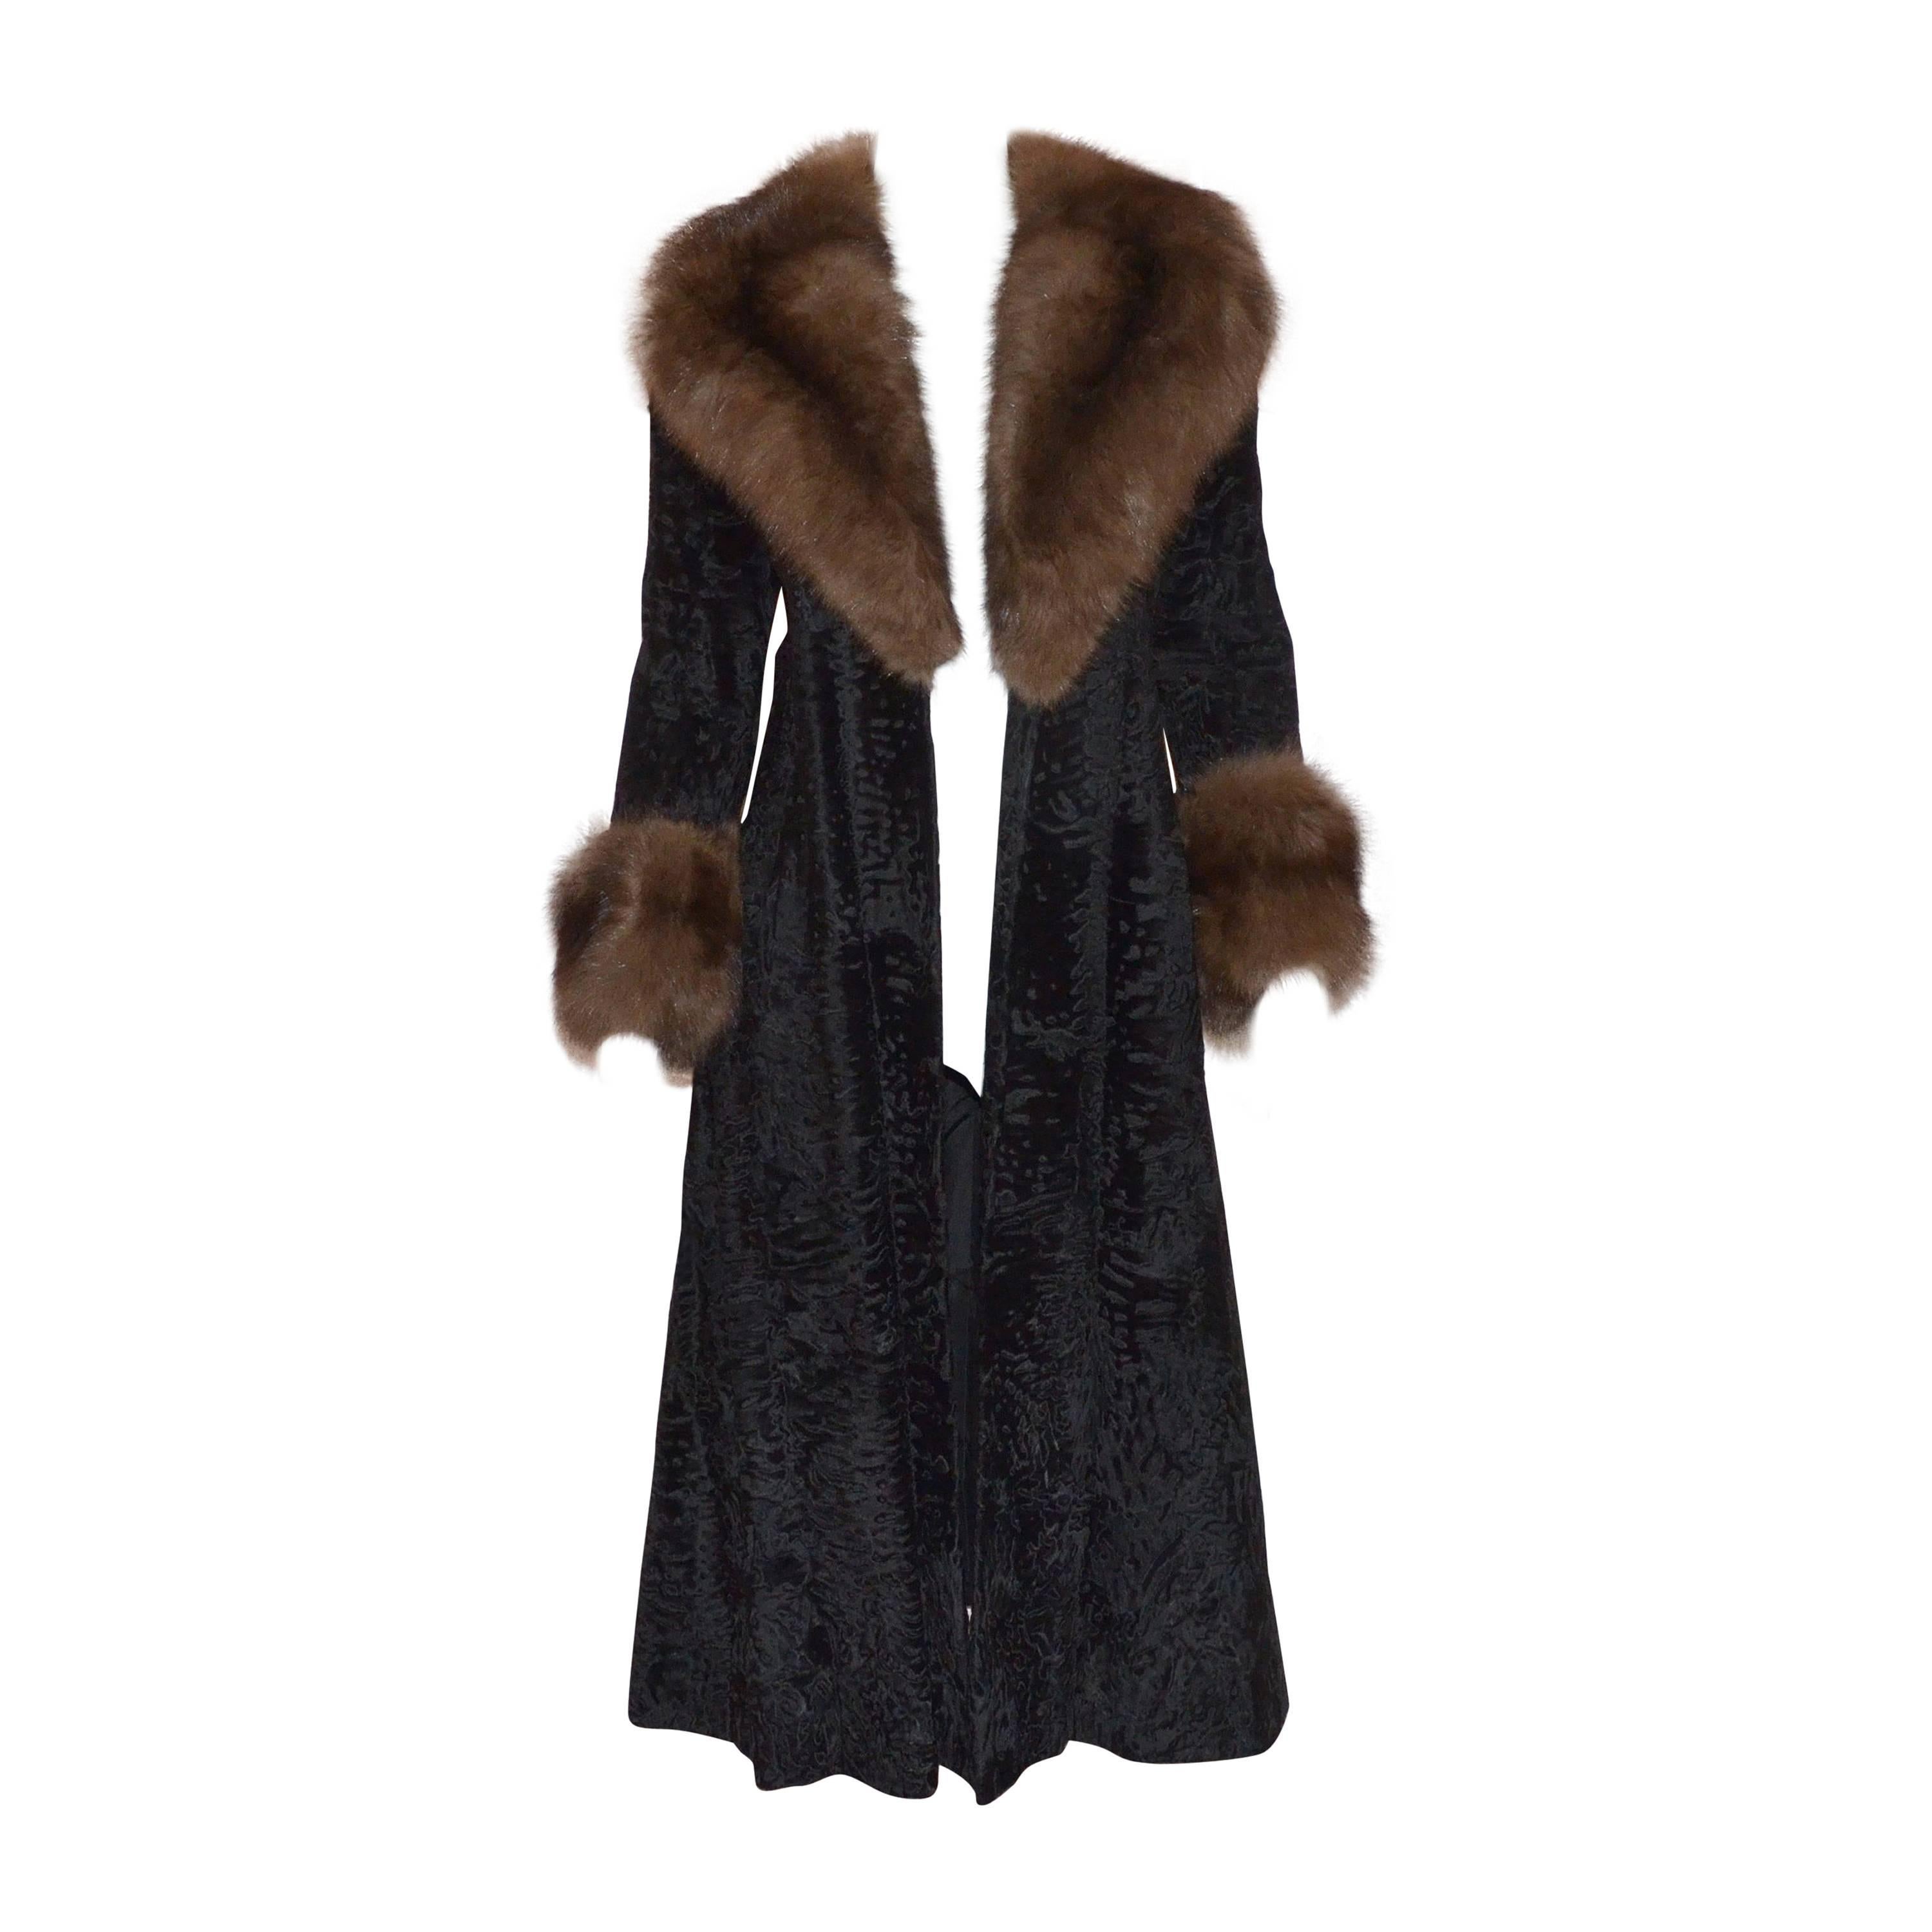 Christian Dior Furs I. Magnin Vintage Broadtail Coat Sable Collar Trim